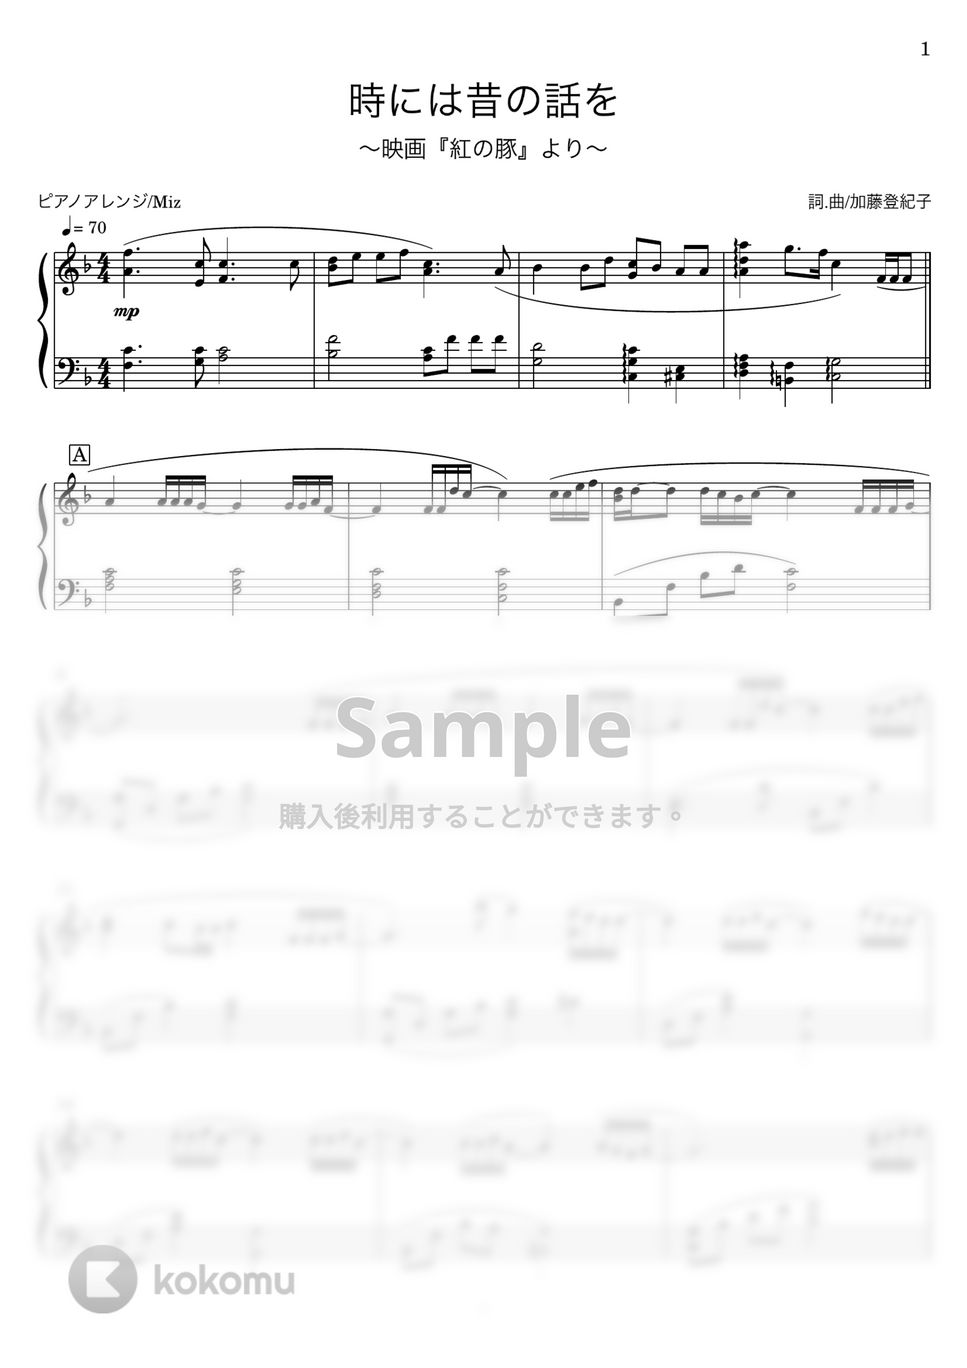 紅の豚 - 時には昔の話を(フルサイズver.) (ピアノソロ) by Miz